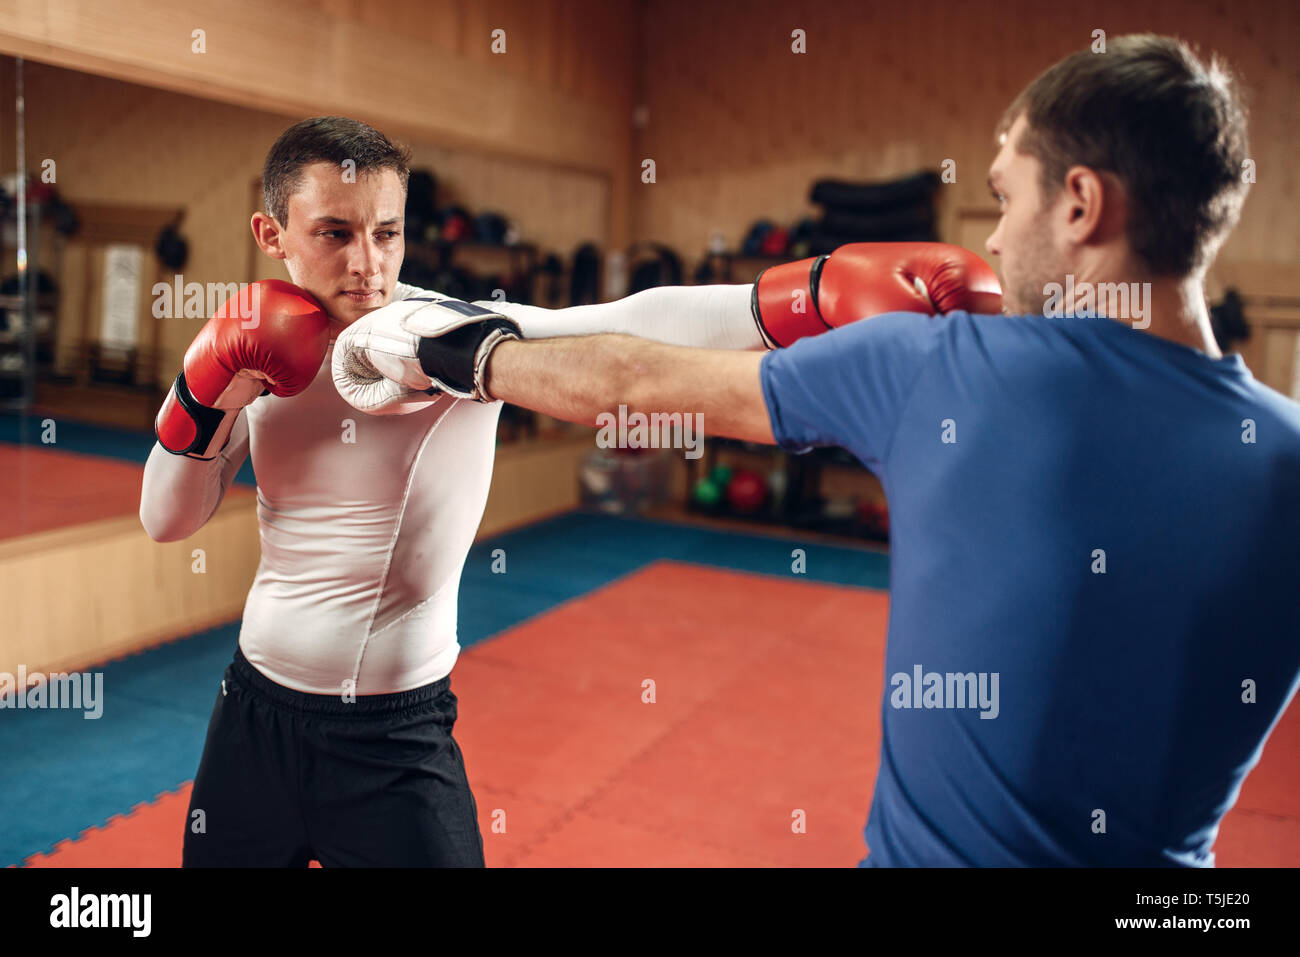 Deux hommes kickboxers en pratiquant des gants sur l'exercice dans la salle de sport. Fighters sur la formation, la pratique du kickboxing en action, sparring partners Banque D'Images